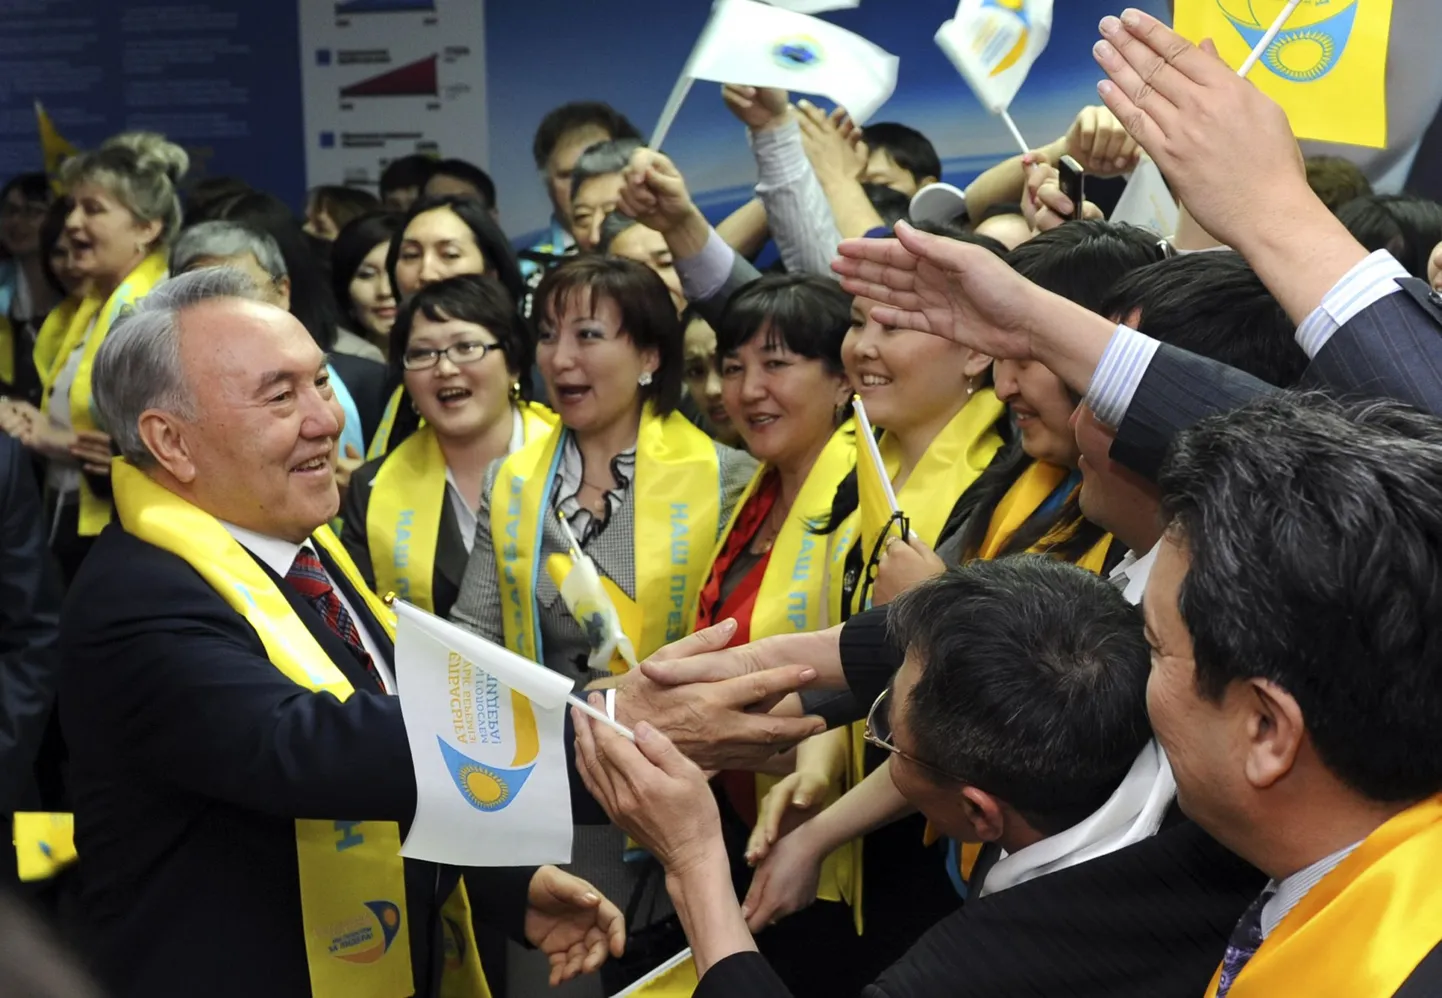 Нурсултан Назарбаев приветствует своих сторонников на форуме "Вперед, вместе с лидером!".